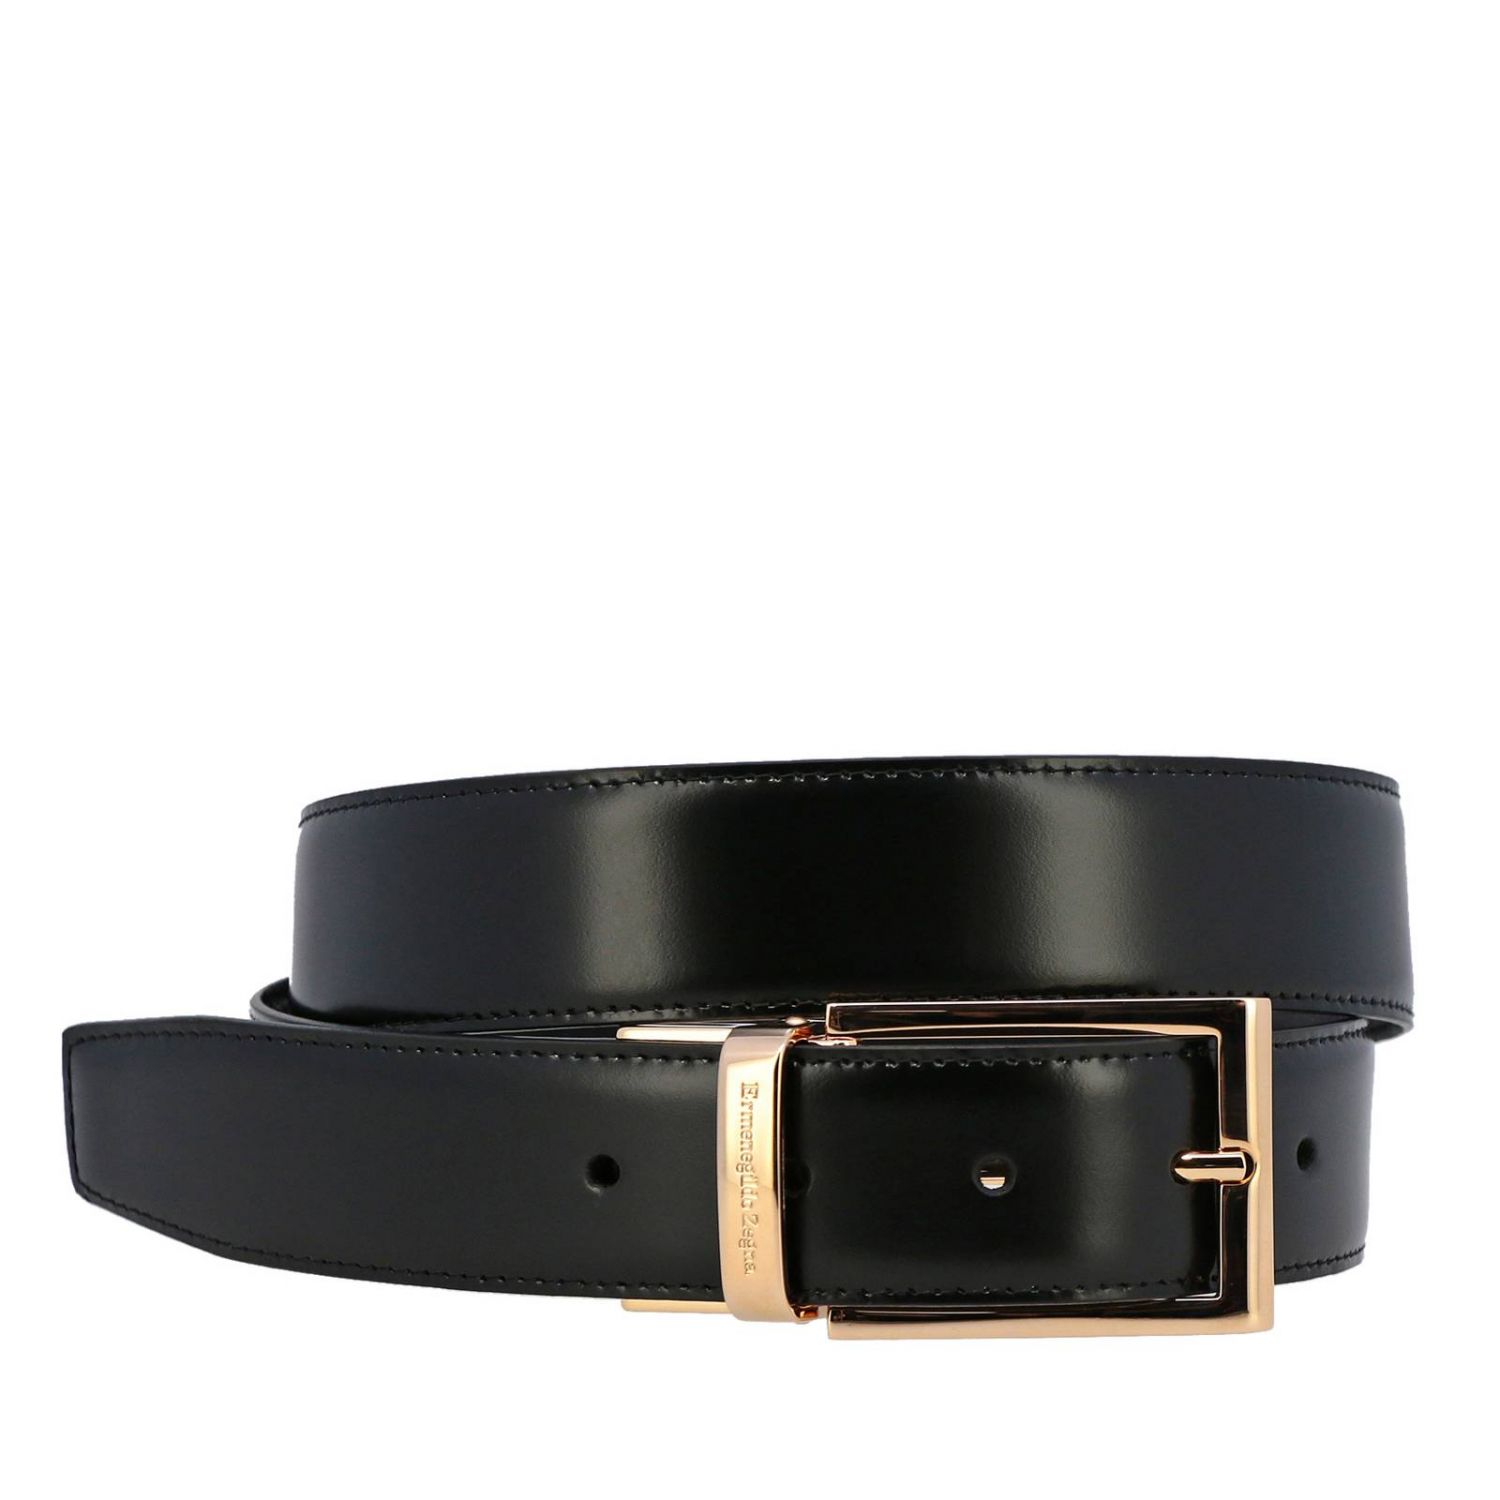 Zegna Outlet: belt for man - Black | Zegna belt 903C BCORE3 online on ...